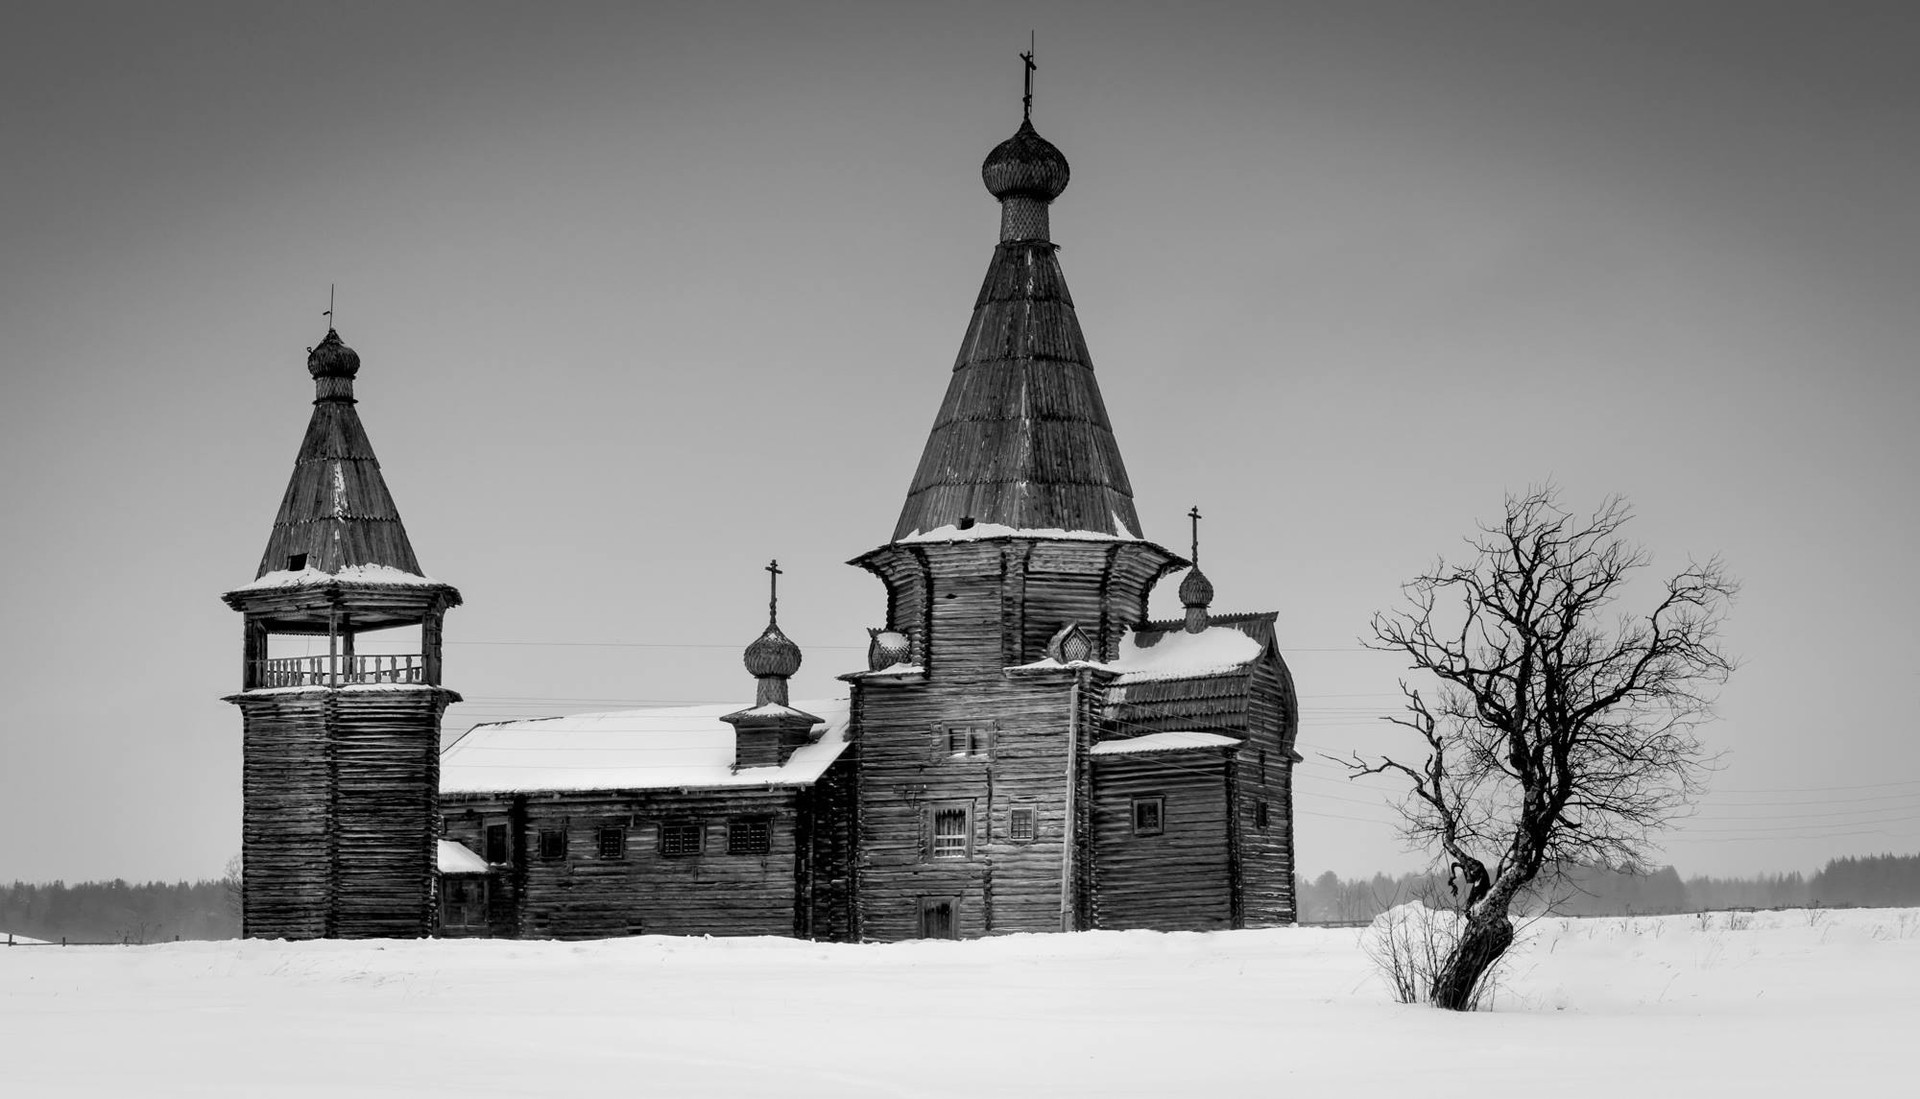 Johannes-Chrysostomos-Kirche, Region Archangelsk, 17. Jahrhundert

